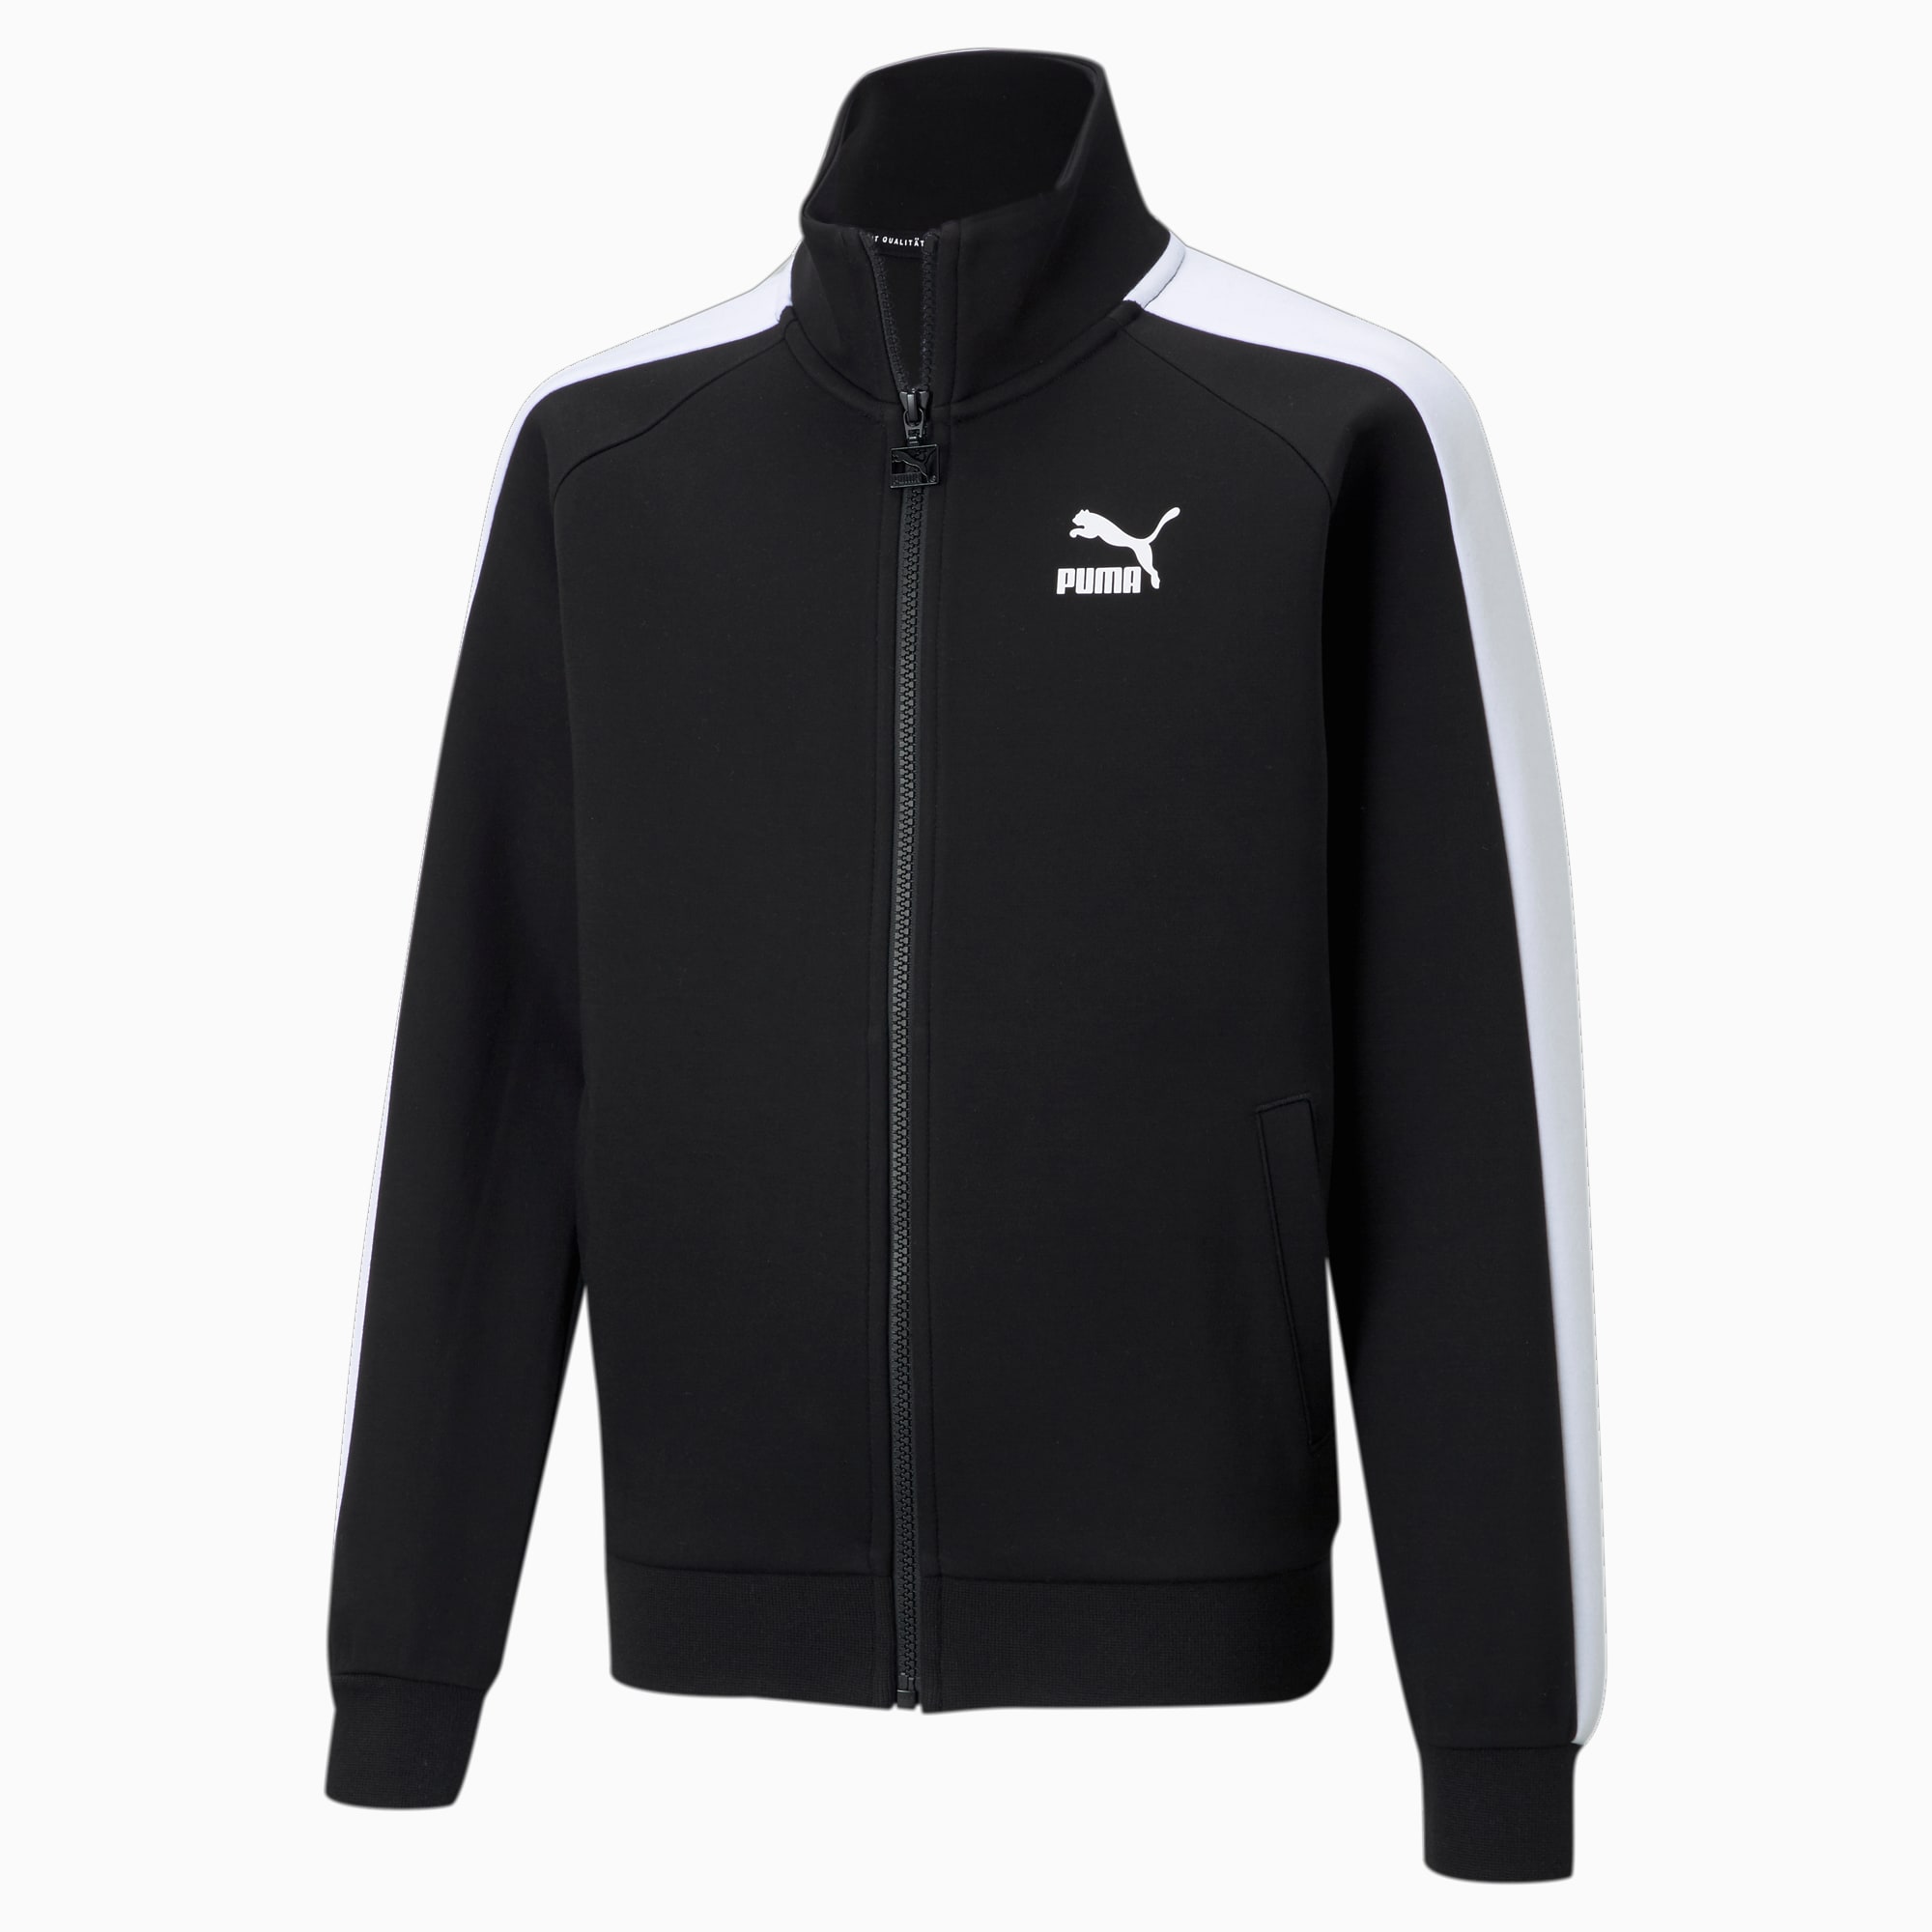 PUMA Iconic T7 Youth Track Jacket, Black/White, Size 140, Clothing